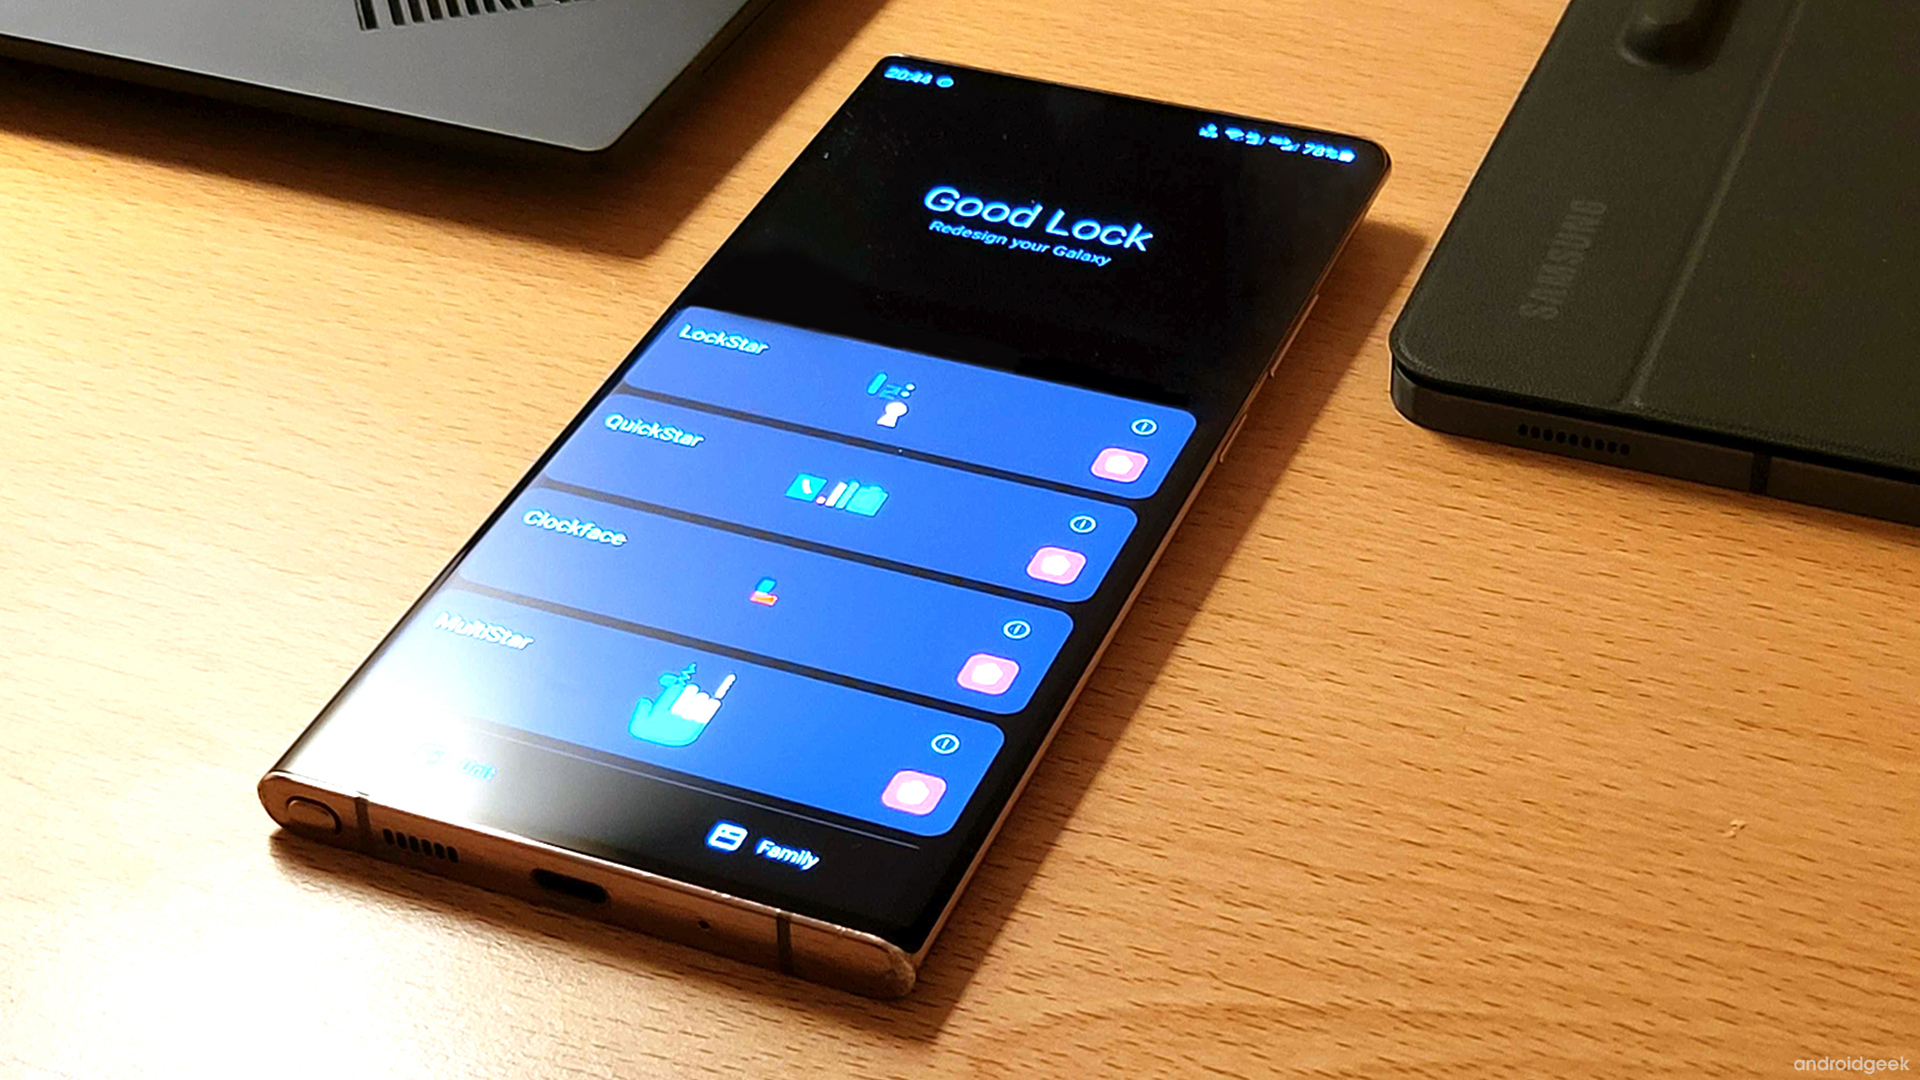 O maravilhoso software Good Lock da Samsung está agora disponível em mais países 3